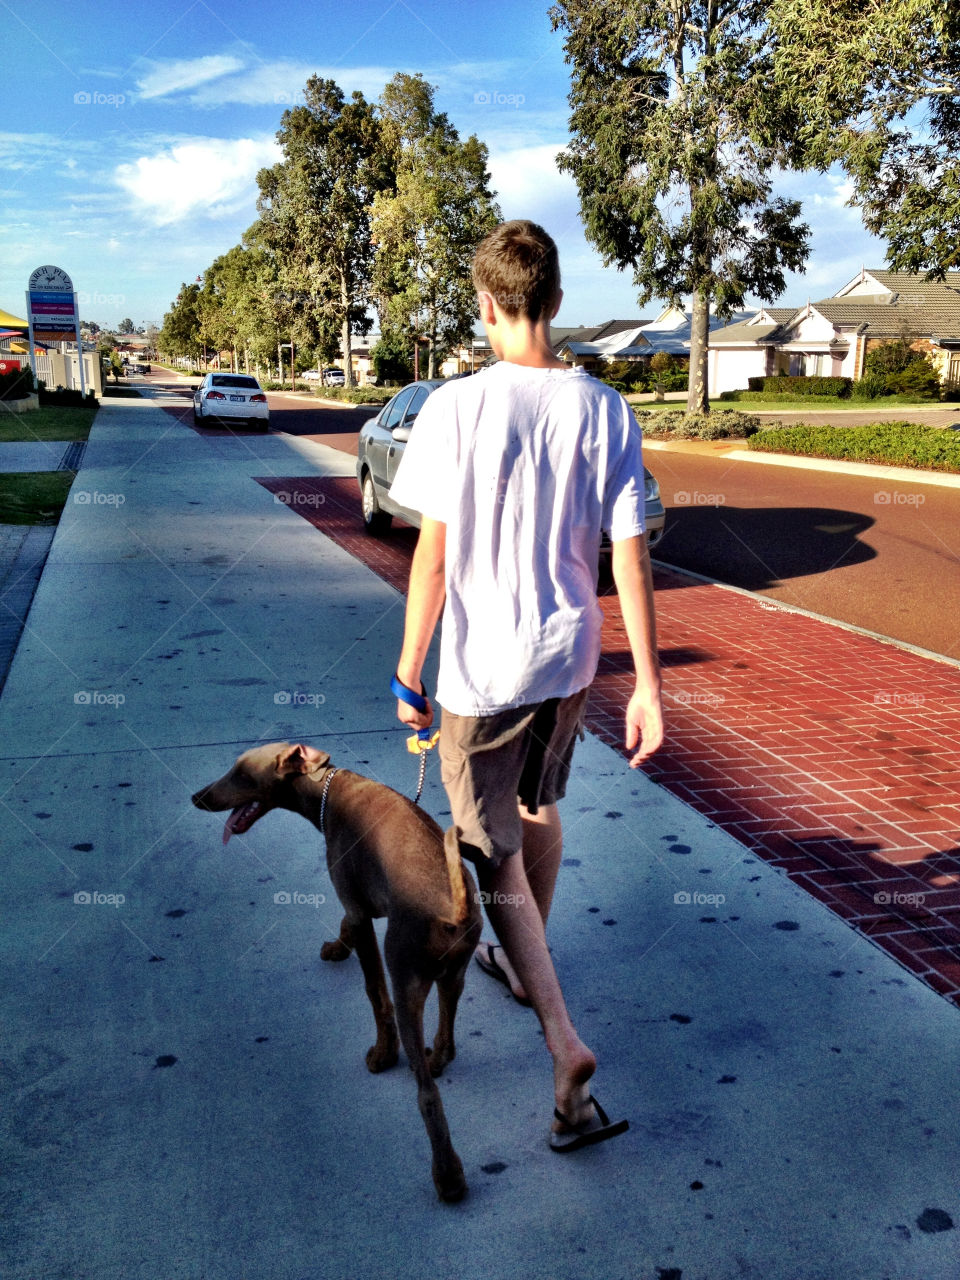 street dog boy boy walking dog by gdyiudt